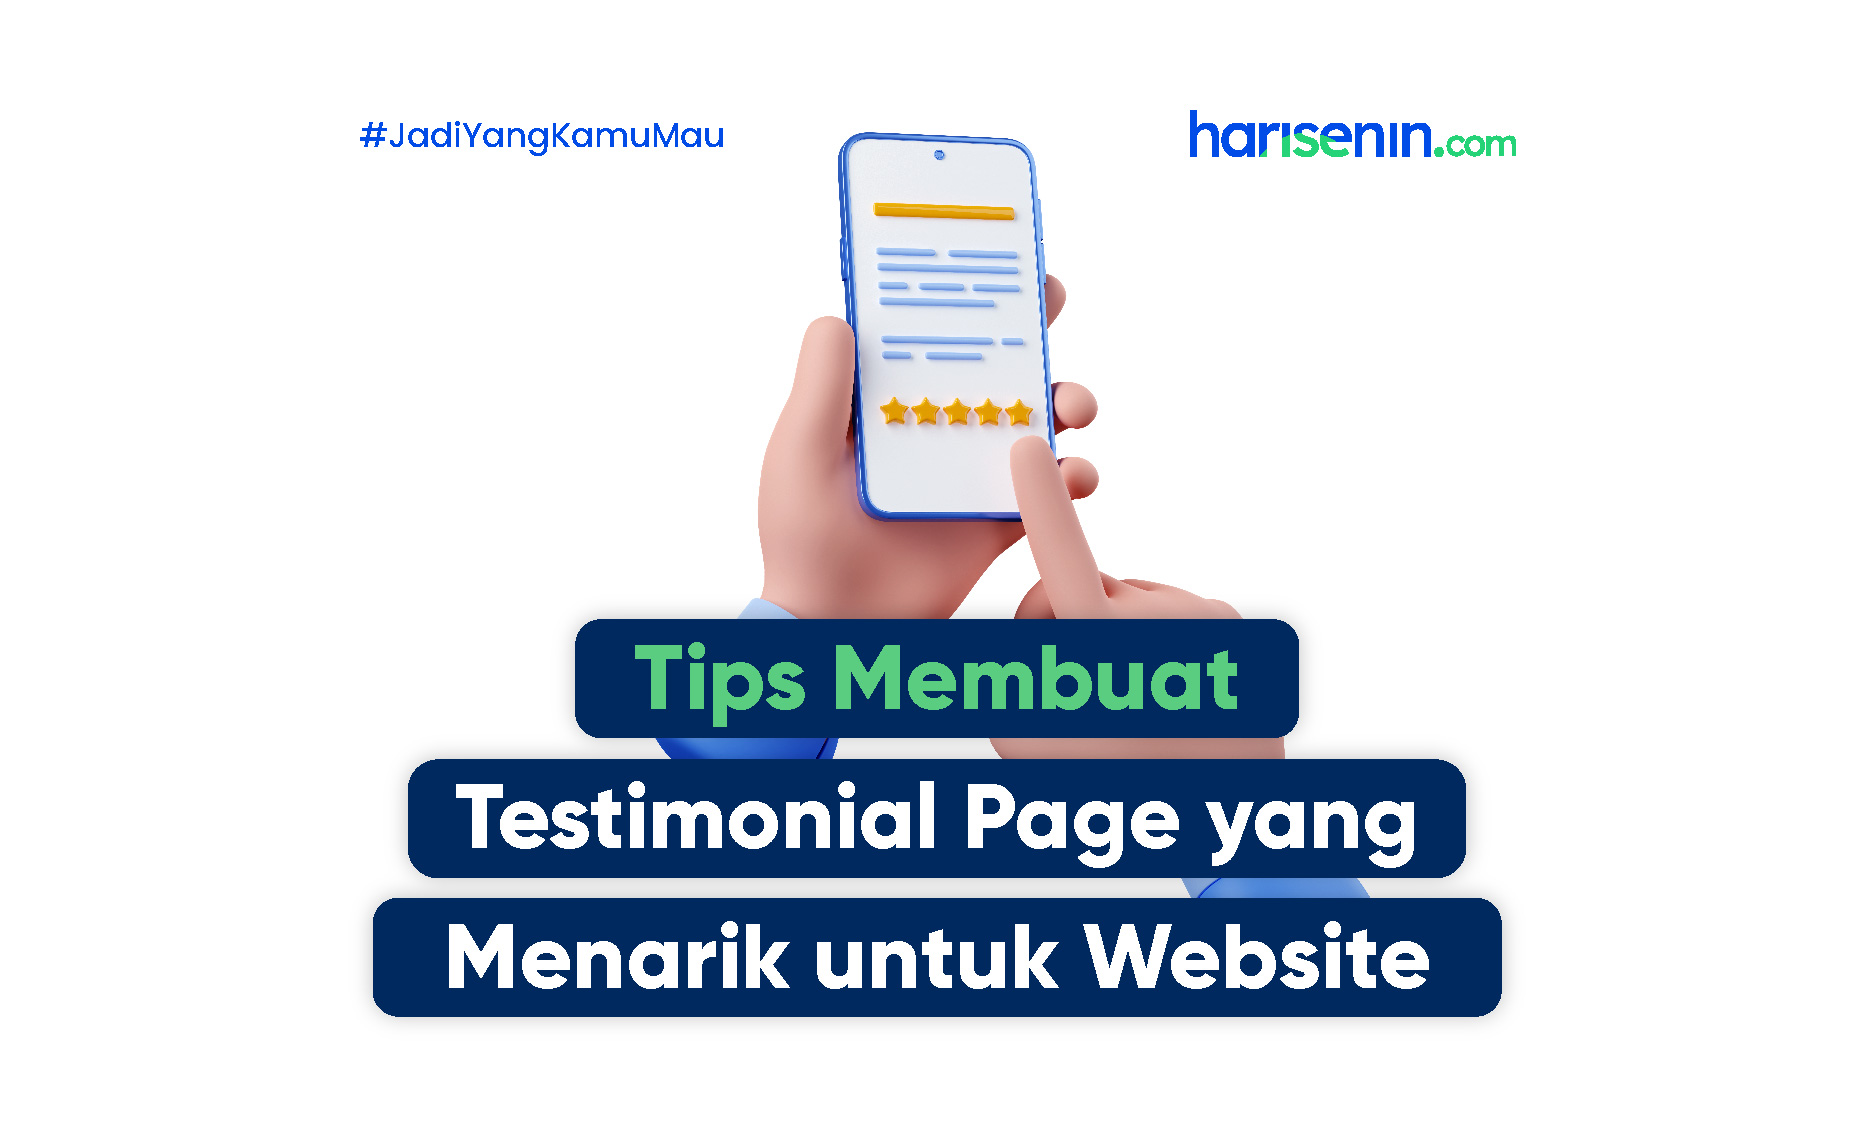 Tips Membuat Testimonial Page yang Menarik untuk Website